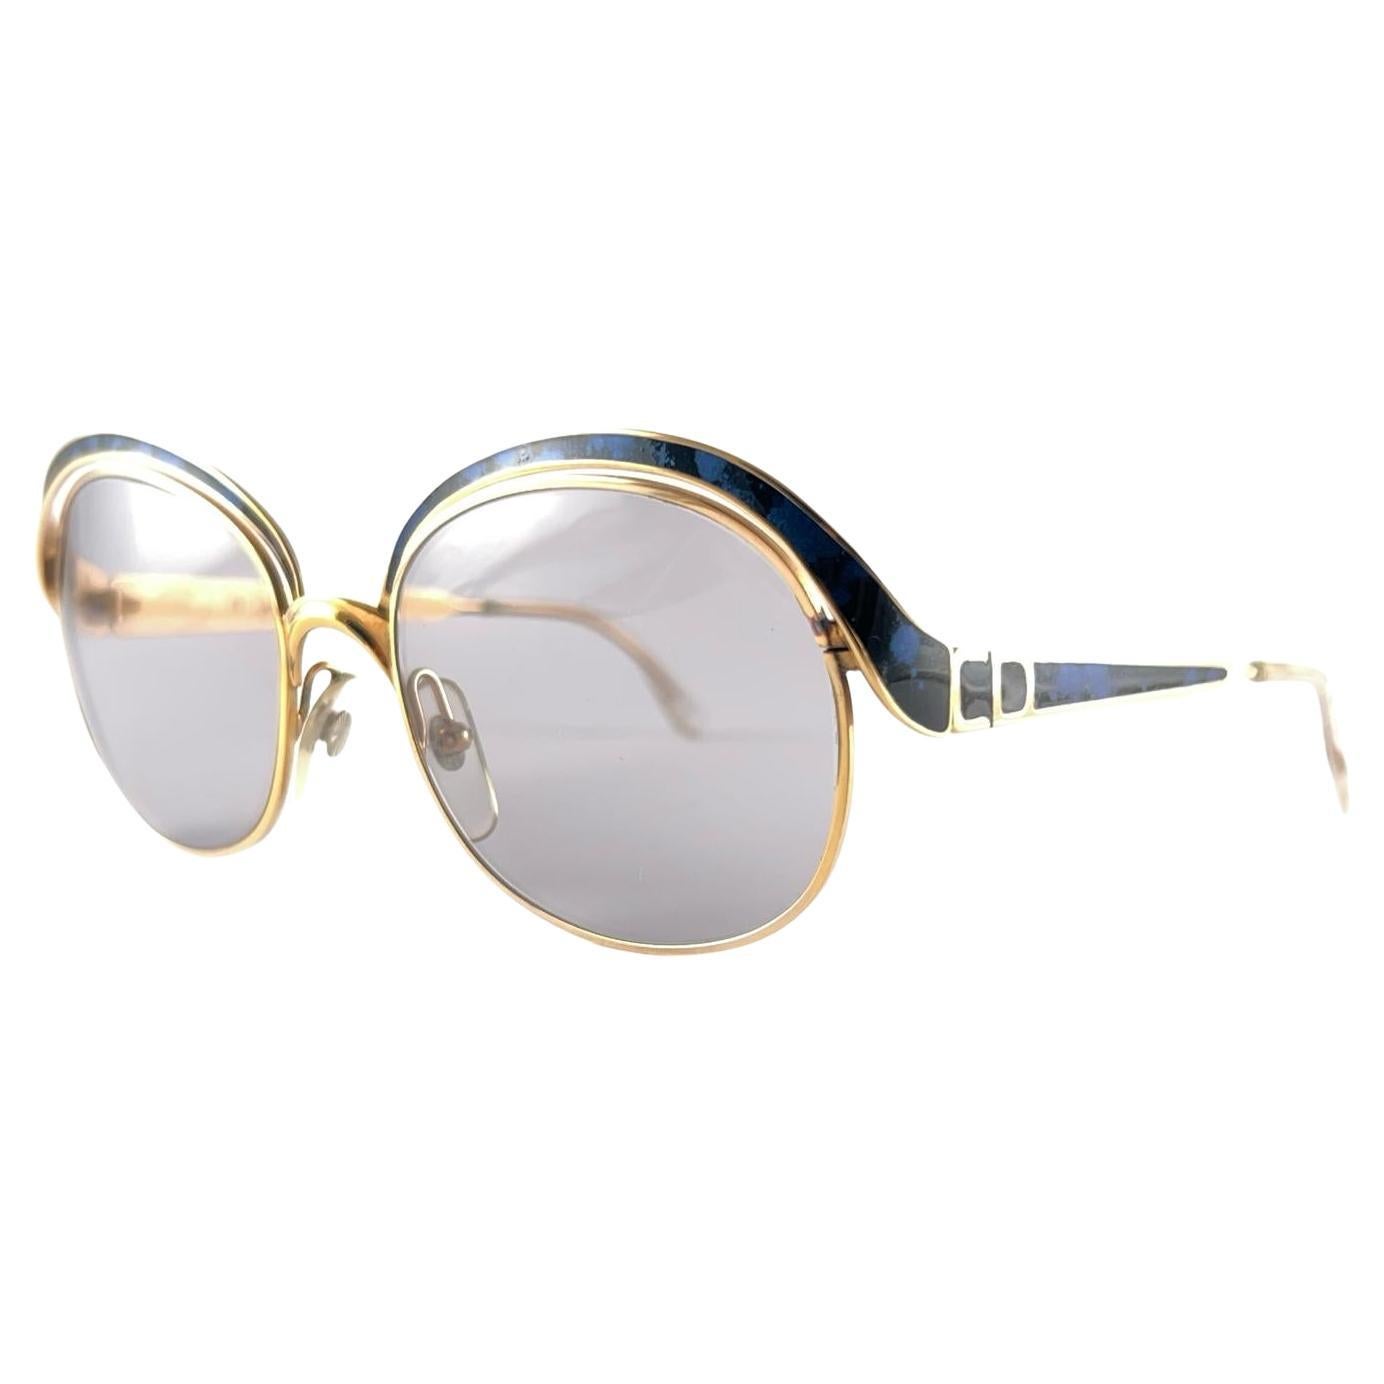 Are Dior sunglasses polarized?